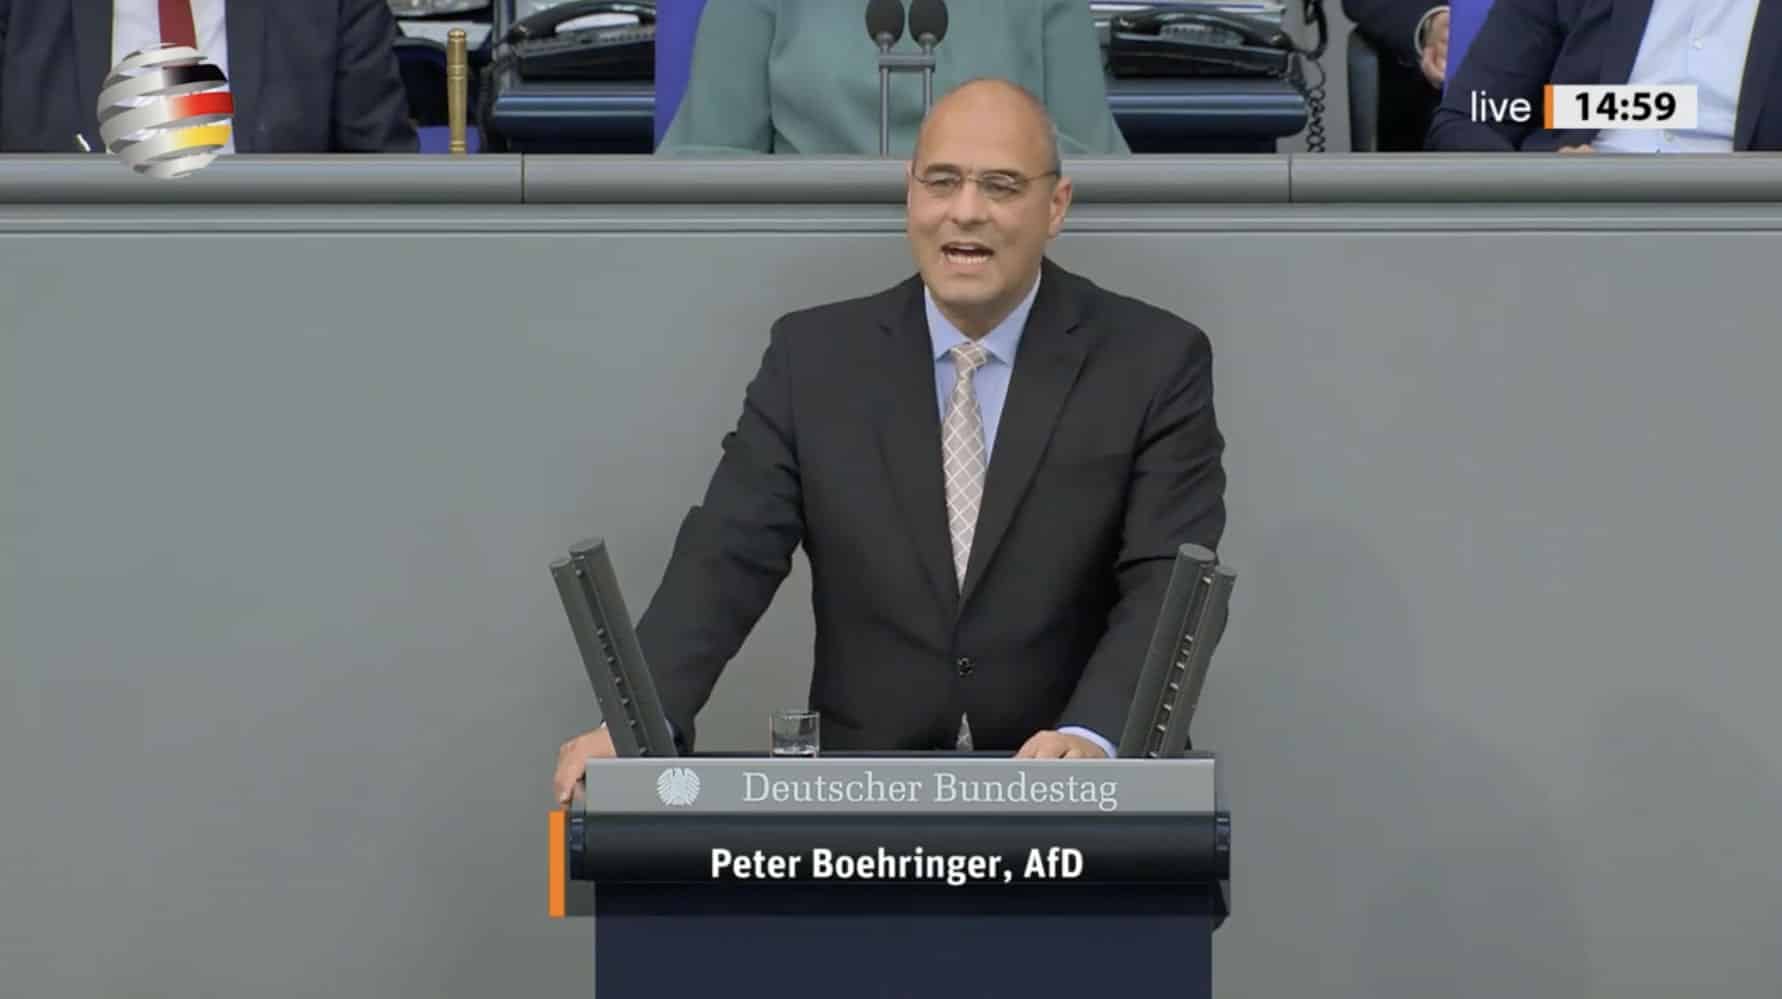 peter-boehringer-(afd):-„fuehren-sie-endlich-eine-politische-agenda-ohne-ideologie-zum-wohl-deutschlands!